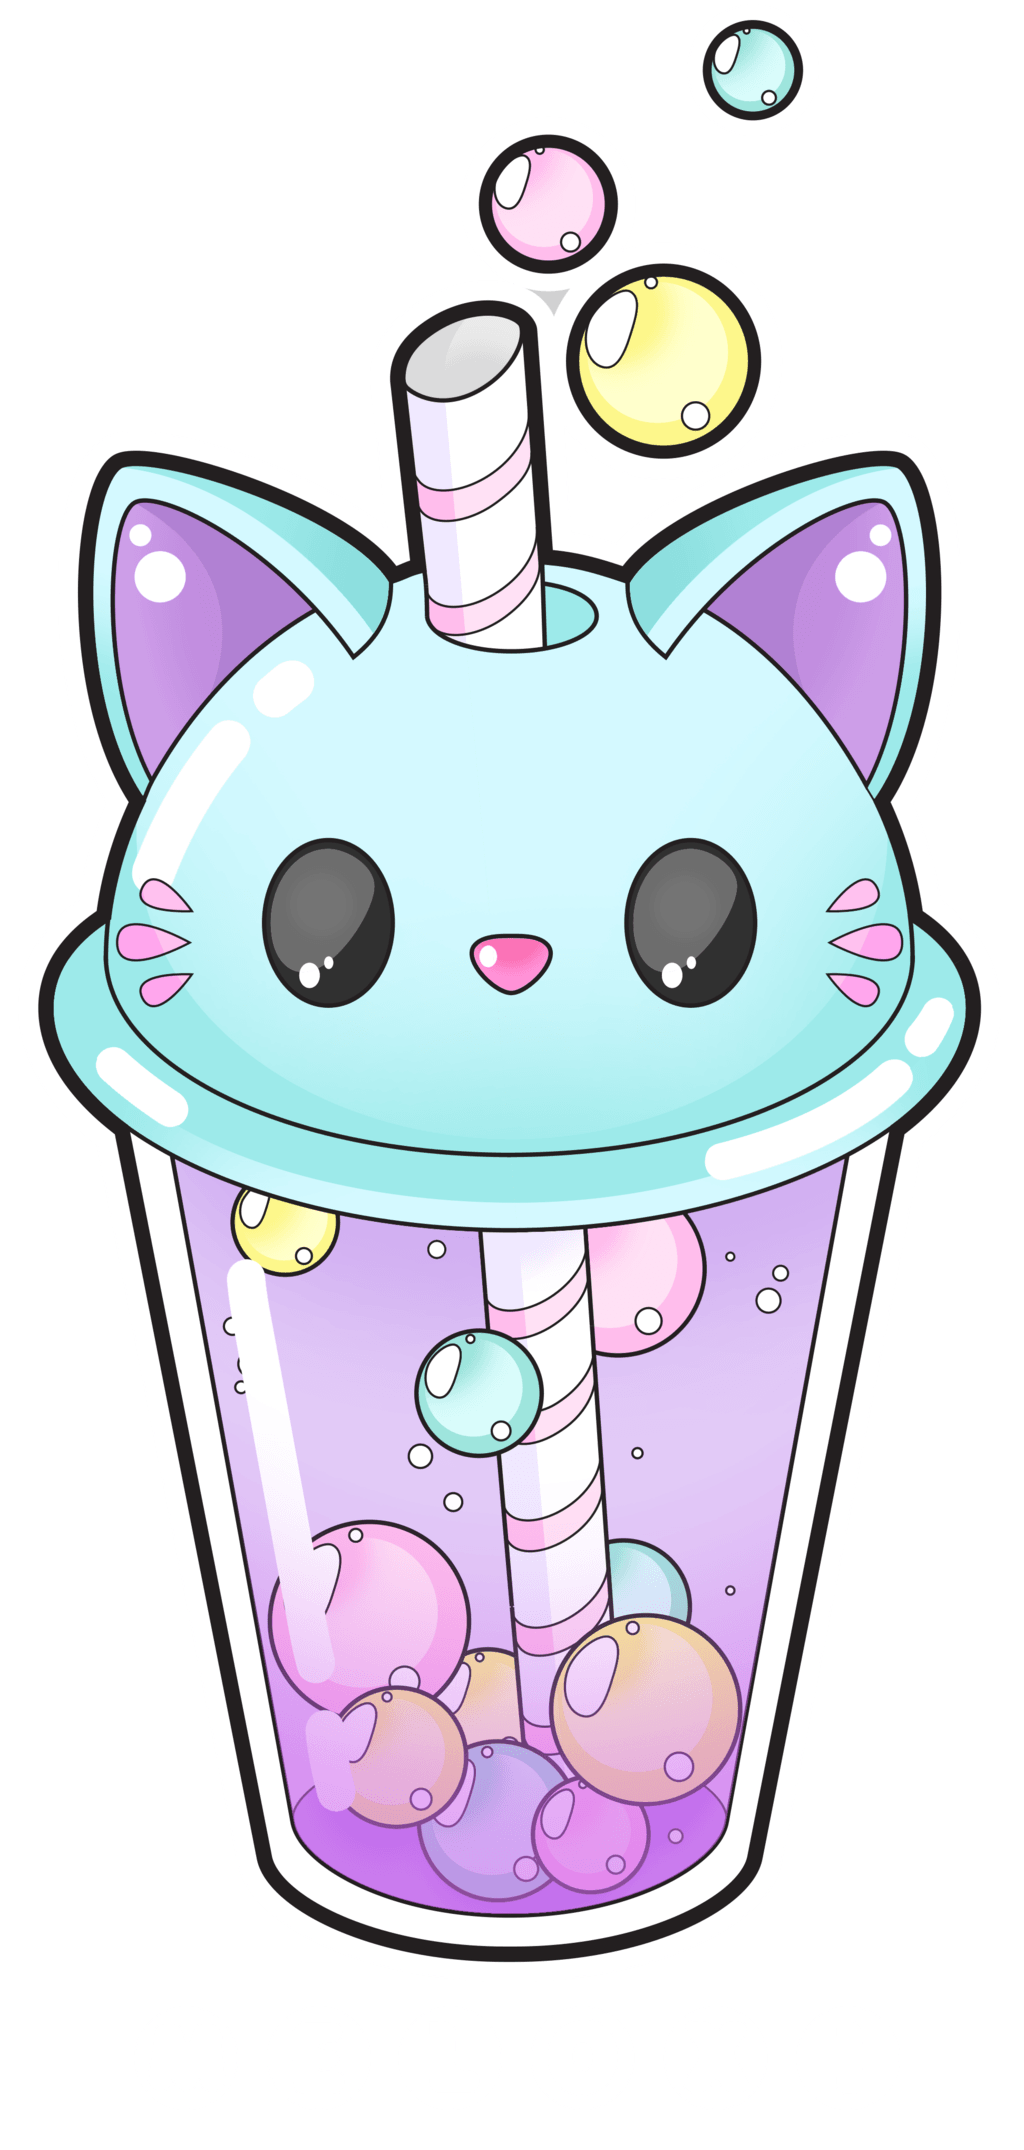 Cute cat bubble tea [Commissions open]